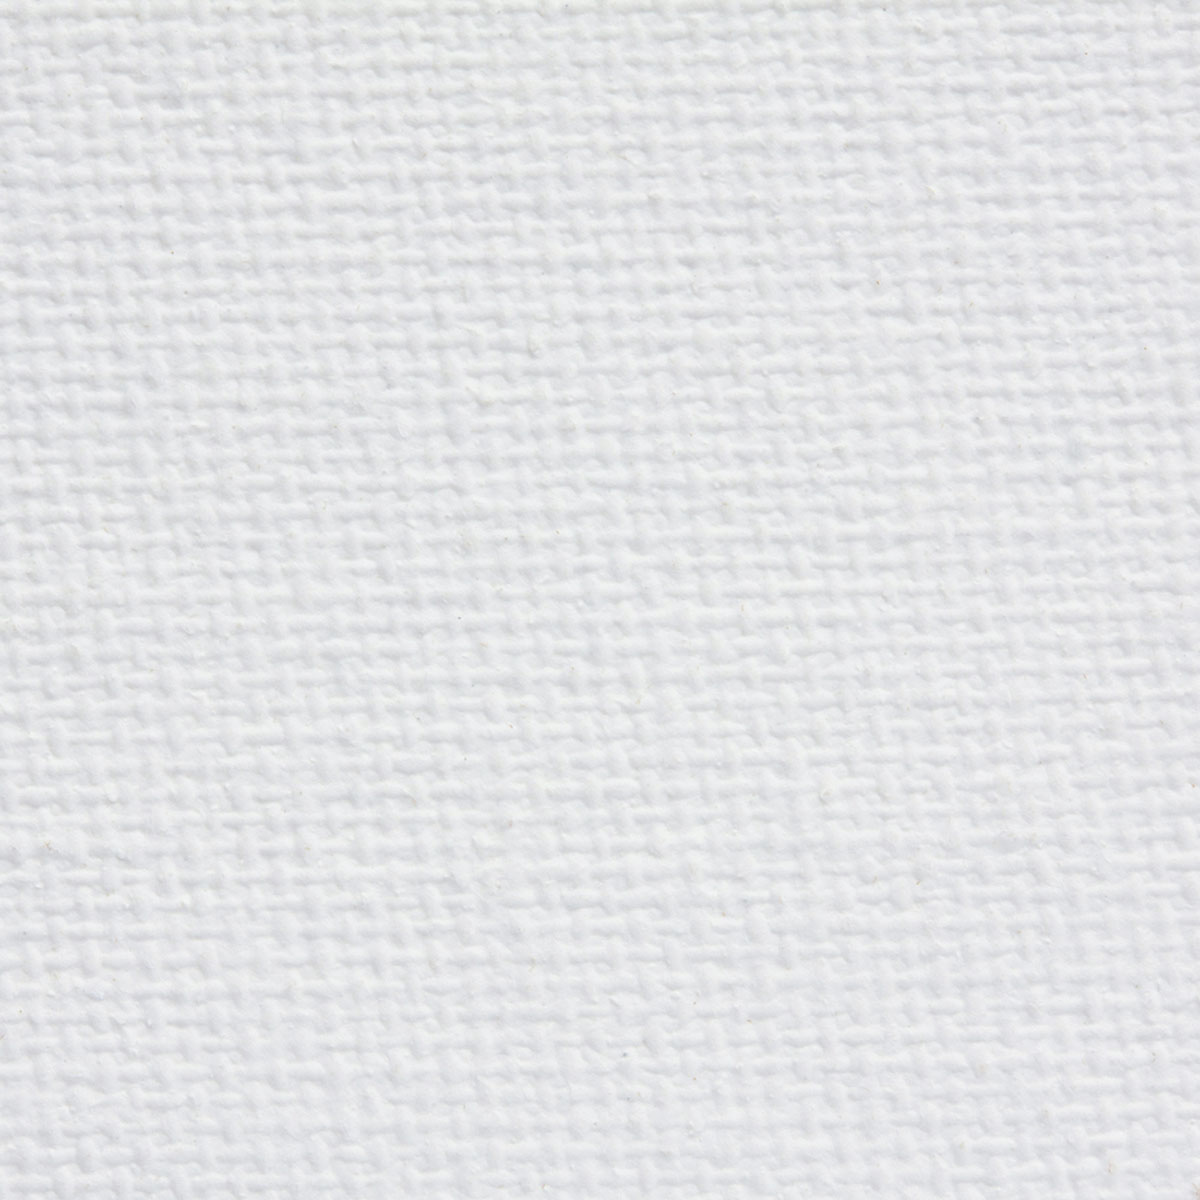 Luca Premium Canvas Rolls - Primed Cotton